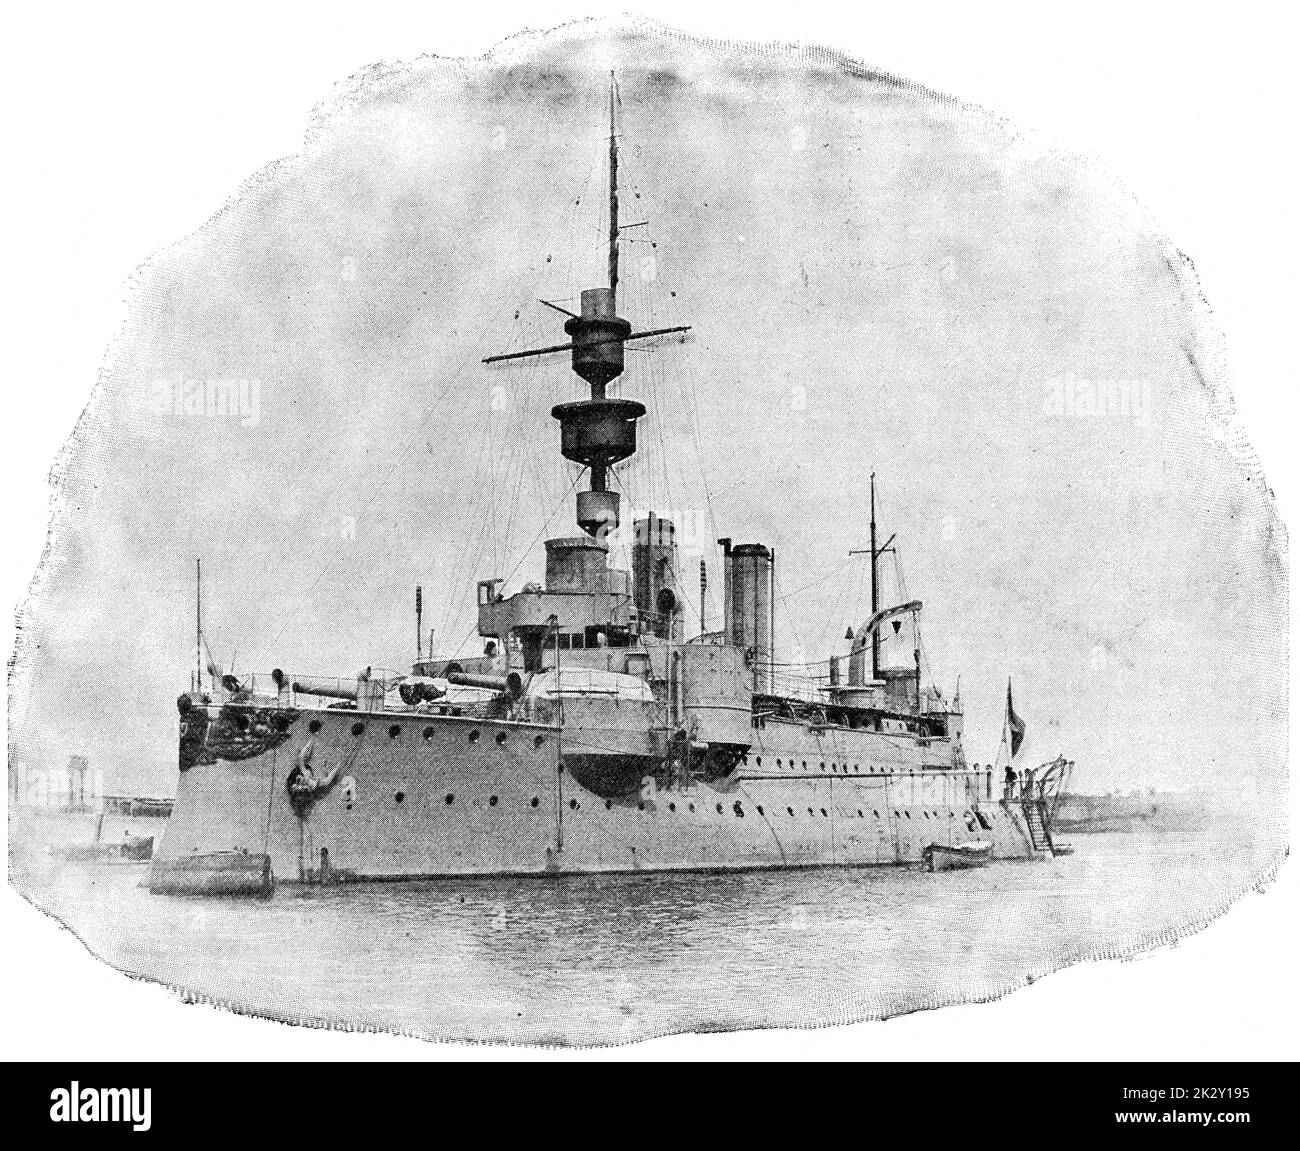 SMS Aegir (1895) - das zweite und letzte Mitglied der Odin-Klasse von Küstenschutzschiffen für die Kaiserliche Deutsche Marine gebaut. Illustration des 19. Jahrhunderts. Deutschland. Weißer Hintergrund. Stockfoto